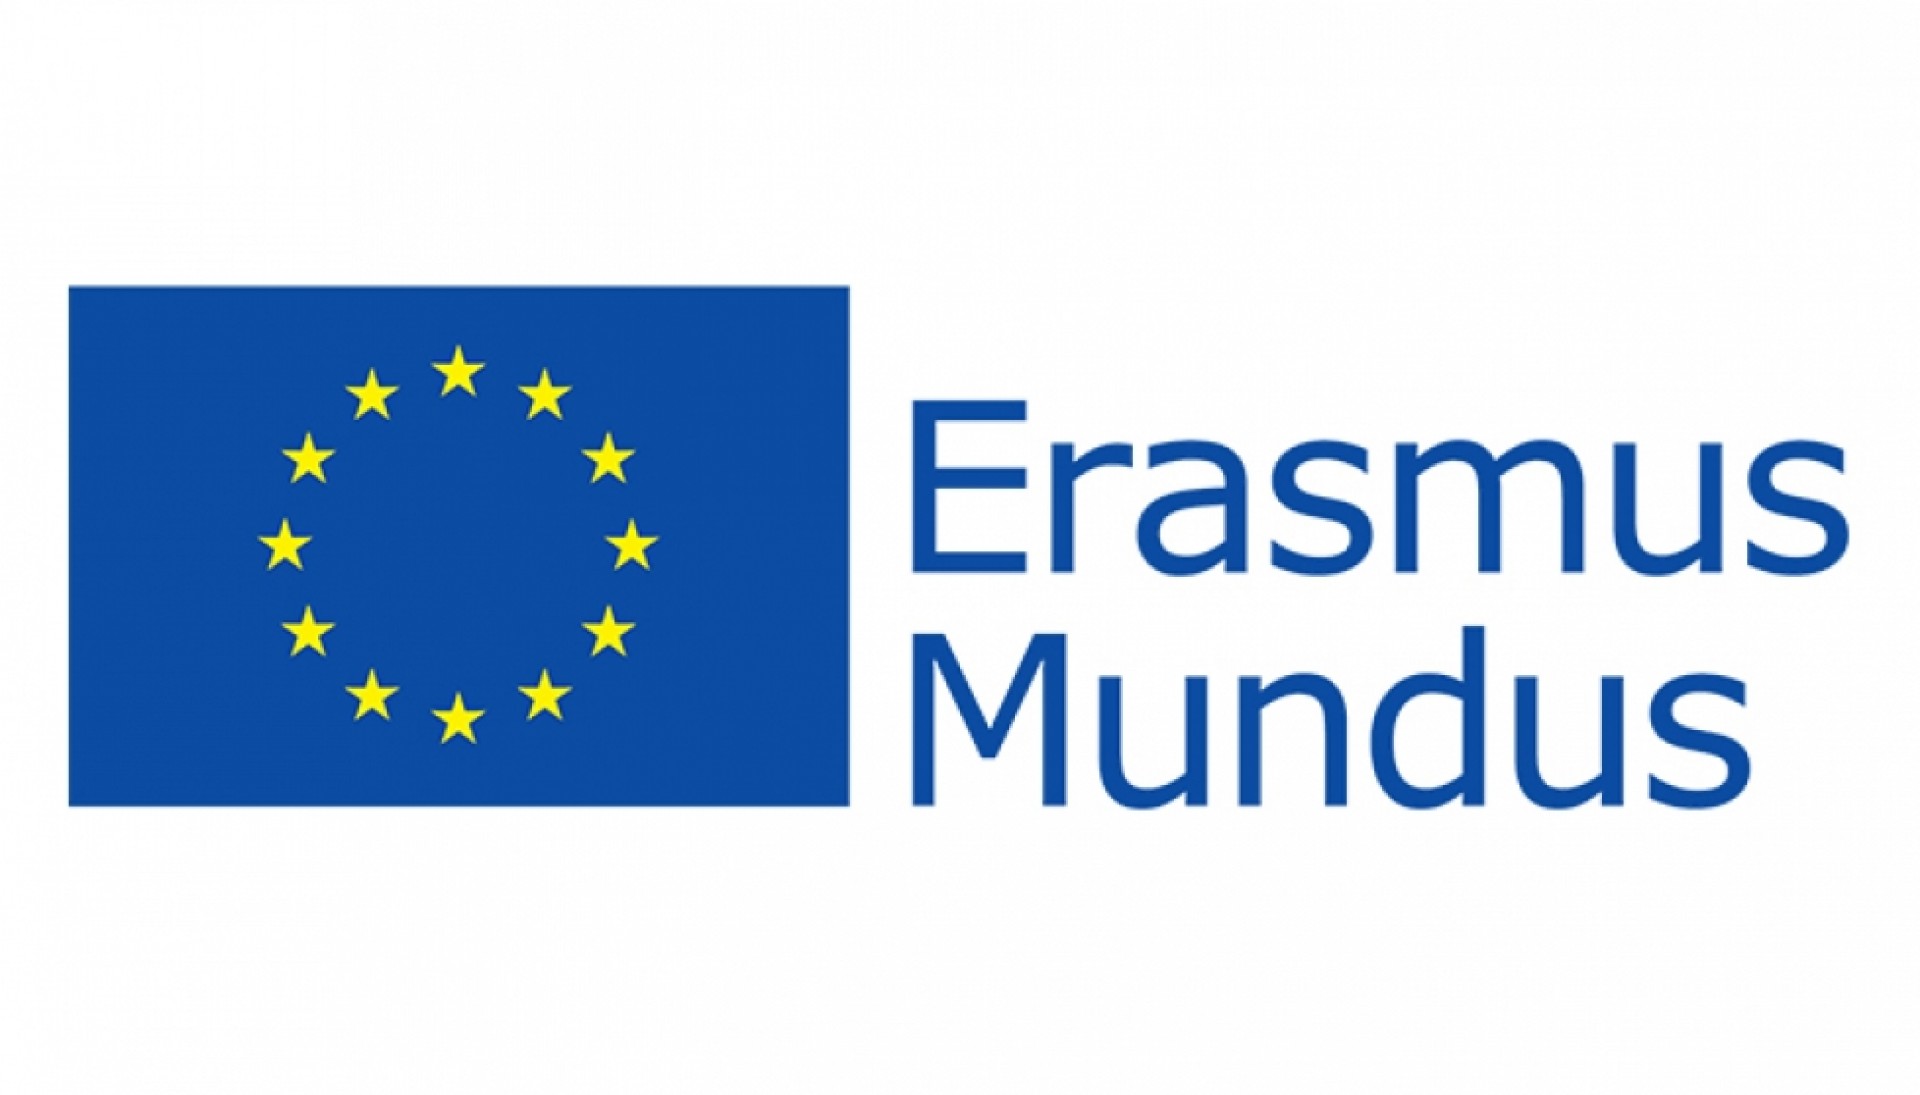 Giành Cơ Hội Học Bổng Thạc Sĩ Erasmus Mundus 2016 - 2017 Đi Các Nước Châu Âu